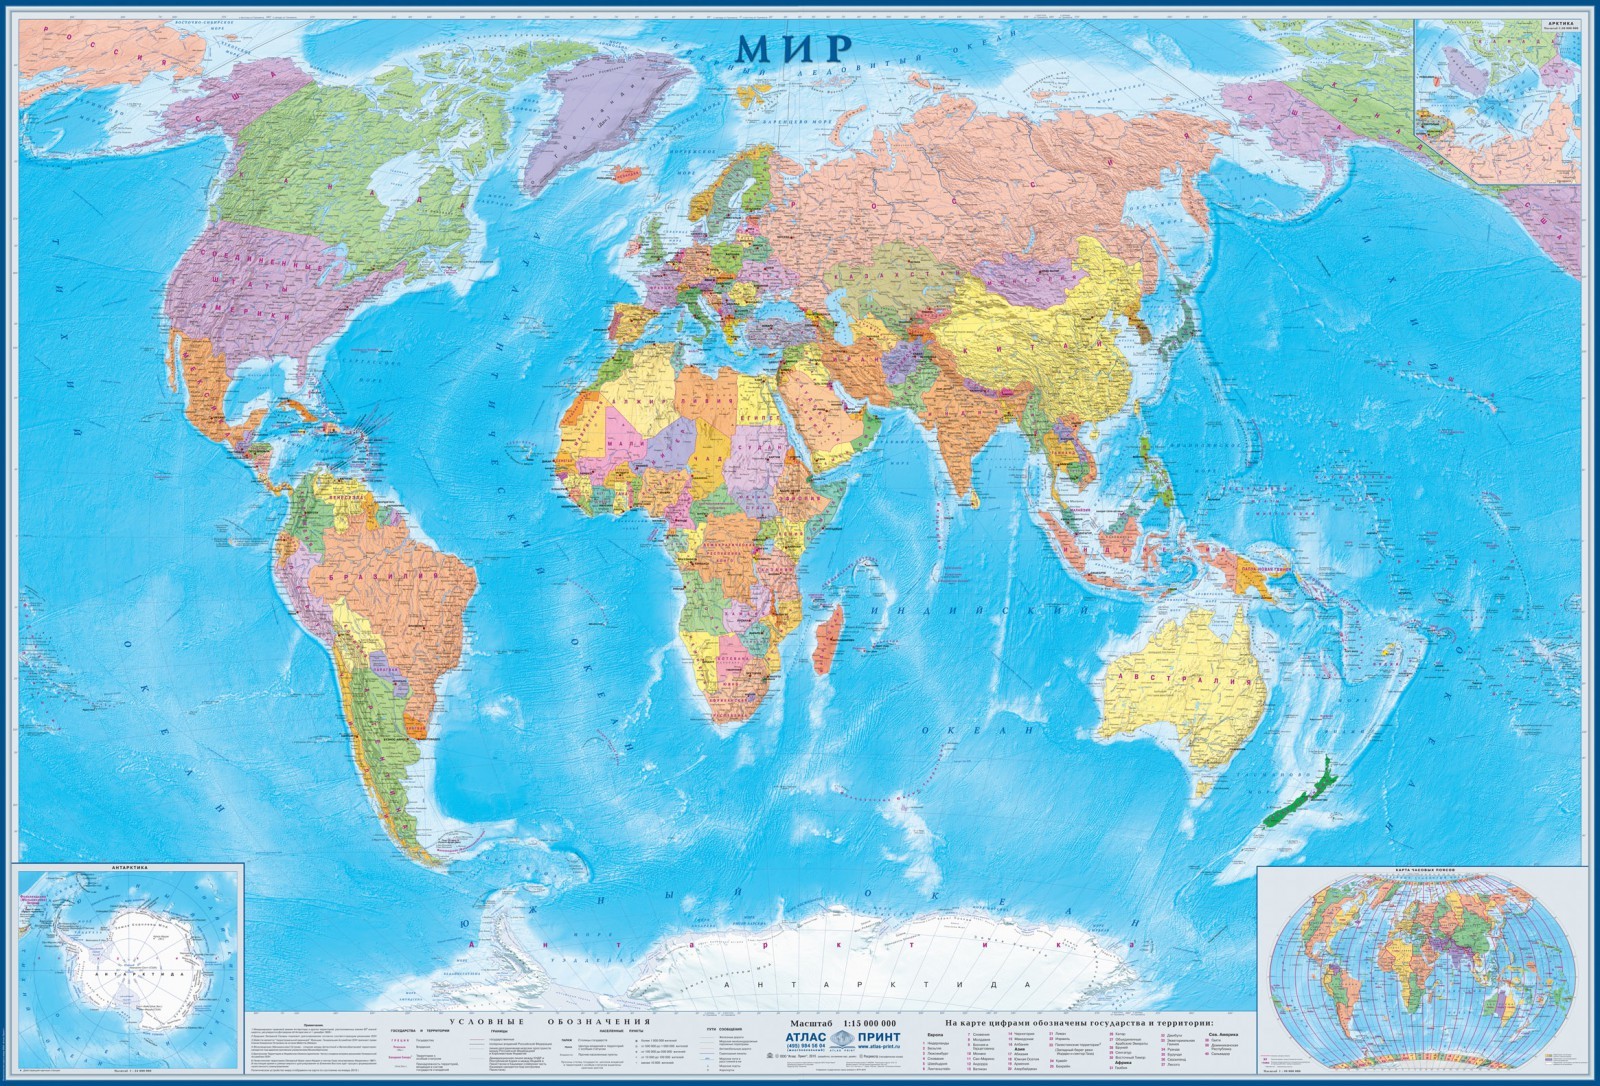 Купить настенные карты Мира в магазине КАРТЫ.РУ